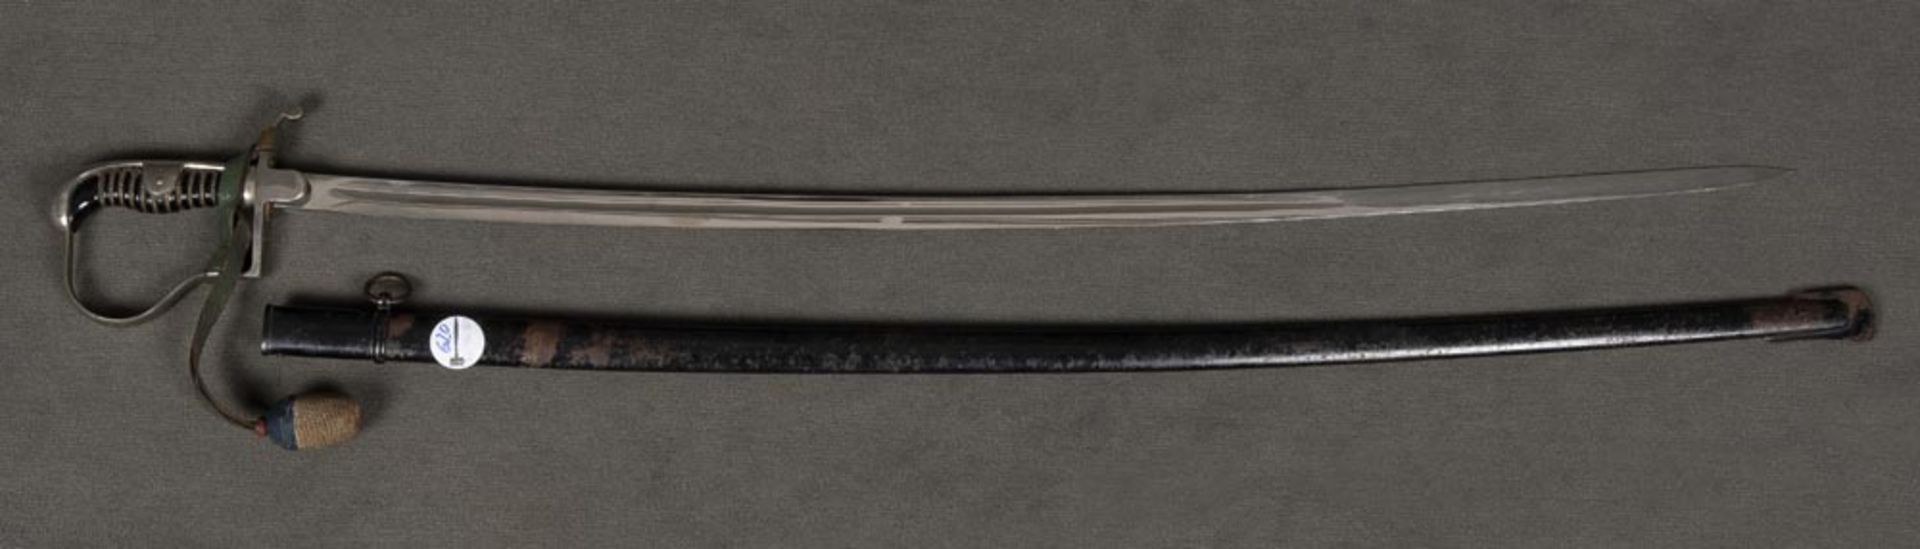 Reichswehr-Kavalleriesäbel mit Portepee, Hersteller ?Eickhorn?, in Scheide, L=107 cm.Reichswehr-